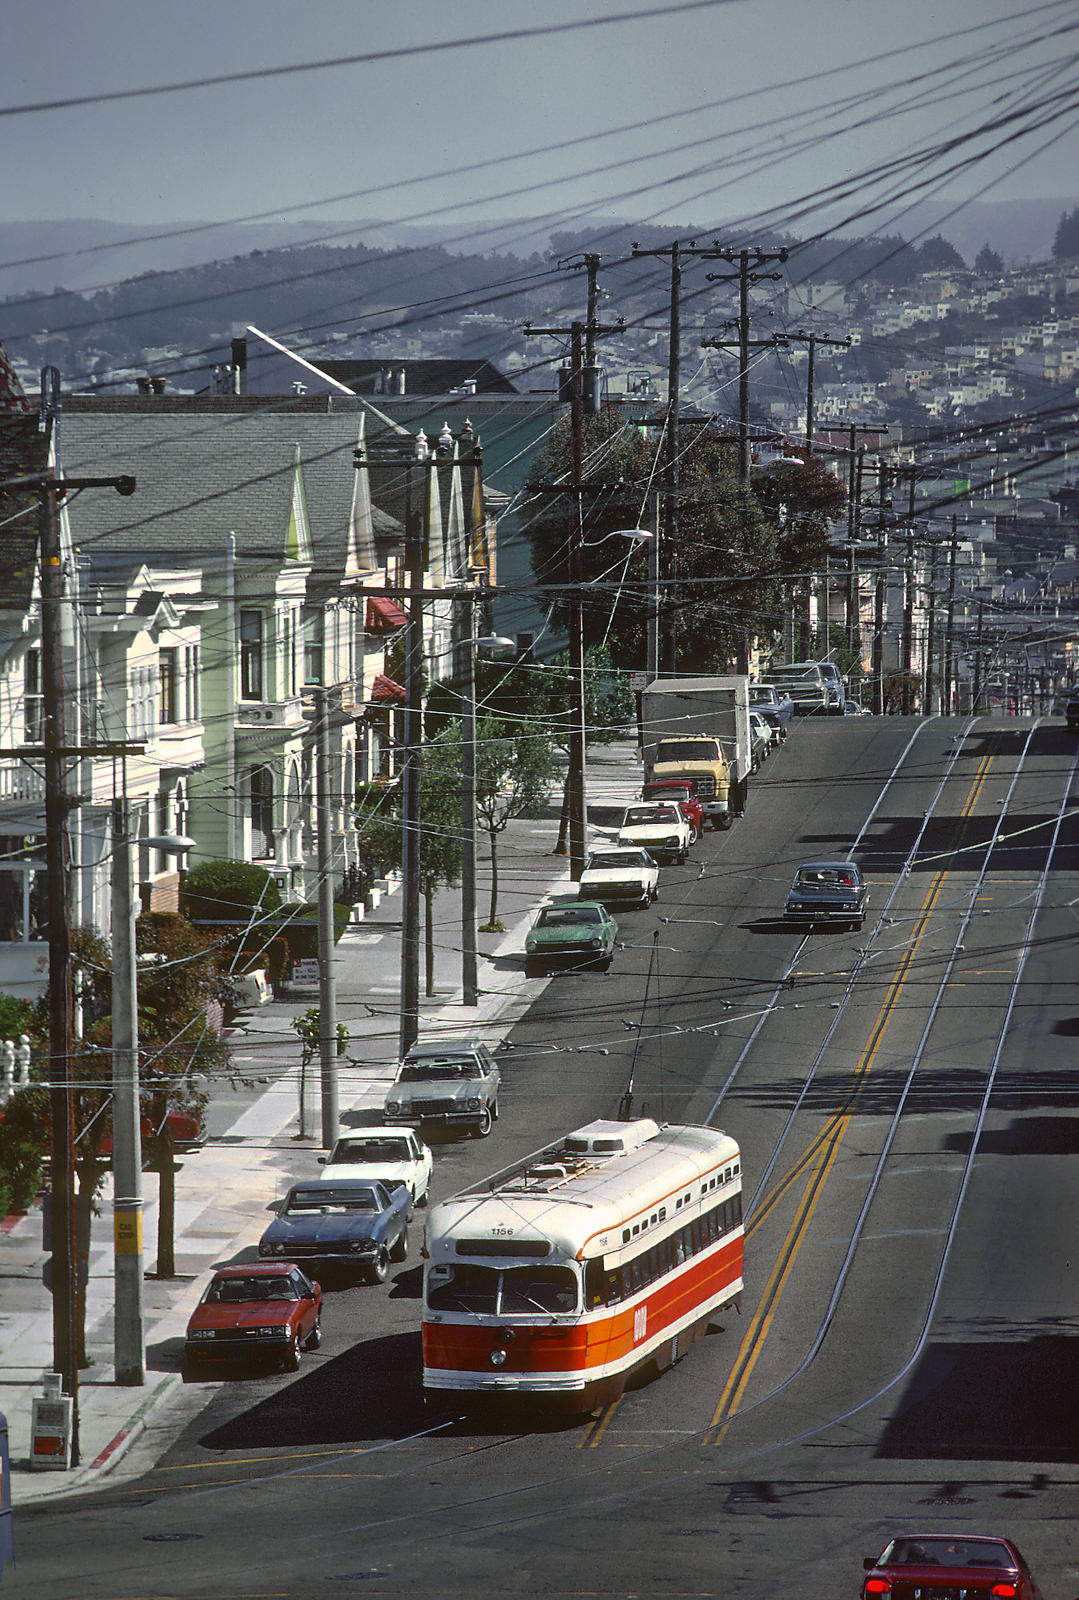 Сан-Франциско, область залива, PCC № 1156; Сан-Франциско, область залива — Трамвайные линии и инфраструктура